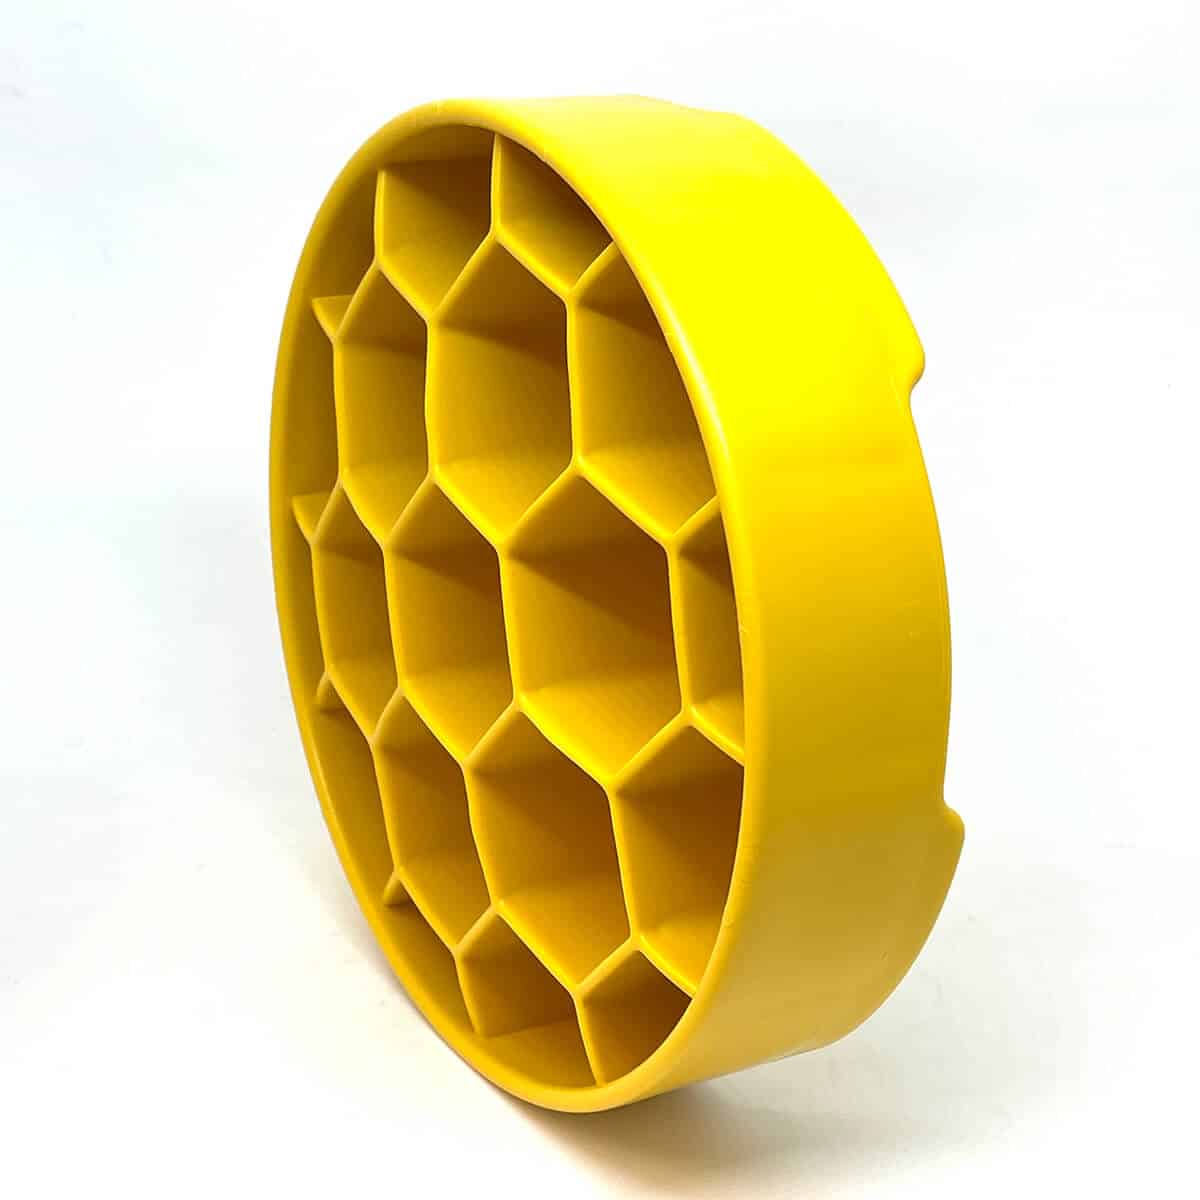 Keltainen SodaPup Honeycomb aktivointikuppi sivusta katsottuna.